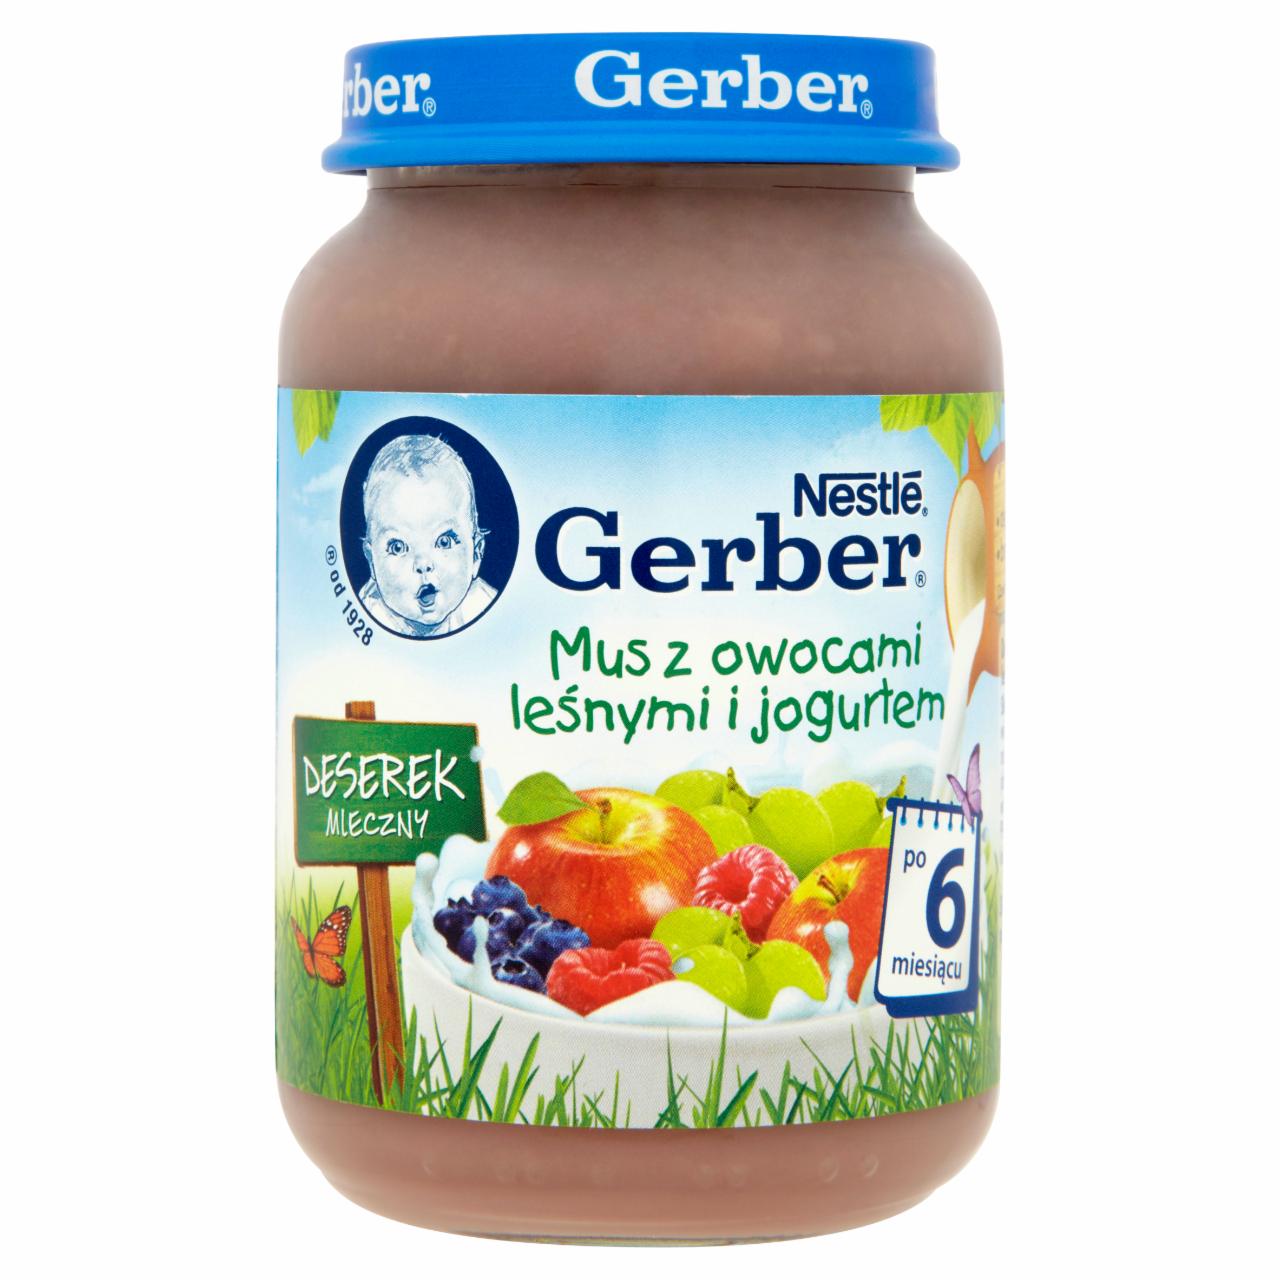 Zdjęcia - Gerber Deserek Mleczny Mus z owocami leśnymi i jogurtem po 6 miesiącu 190 g